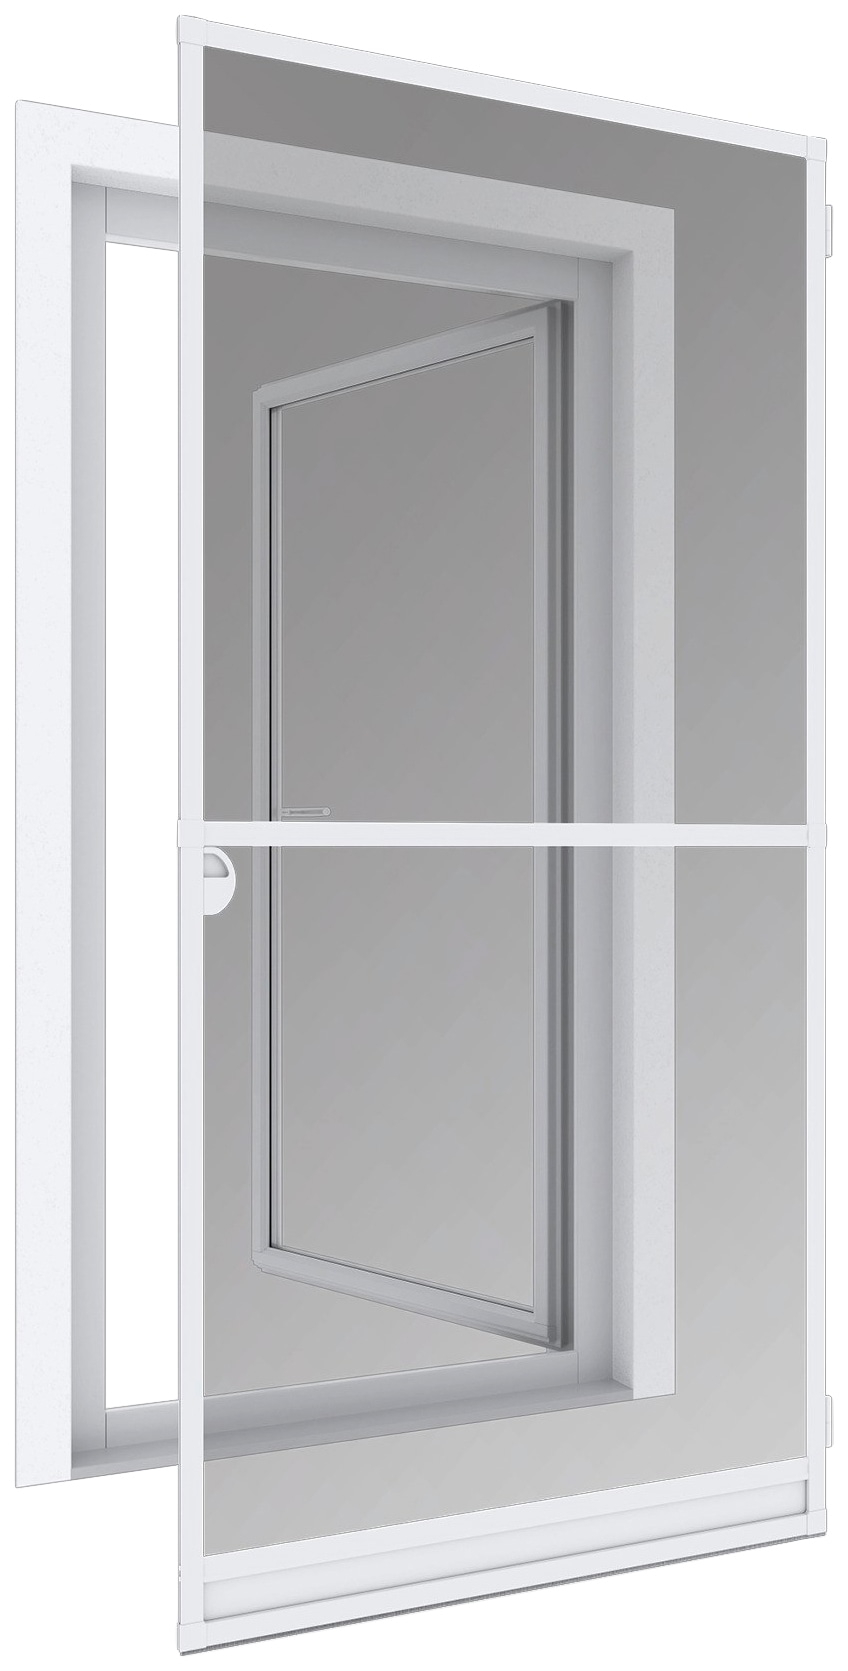 Windhager Insektenschutz-Tür »EXPERT Rahmen Drehtür«, BxH: 100x210 cm